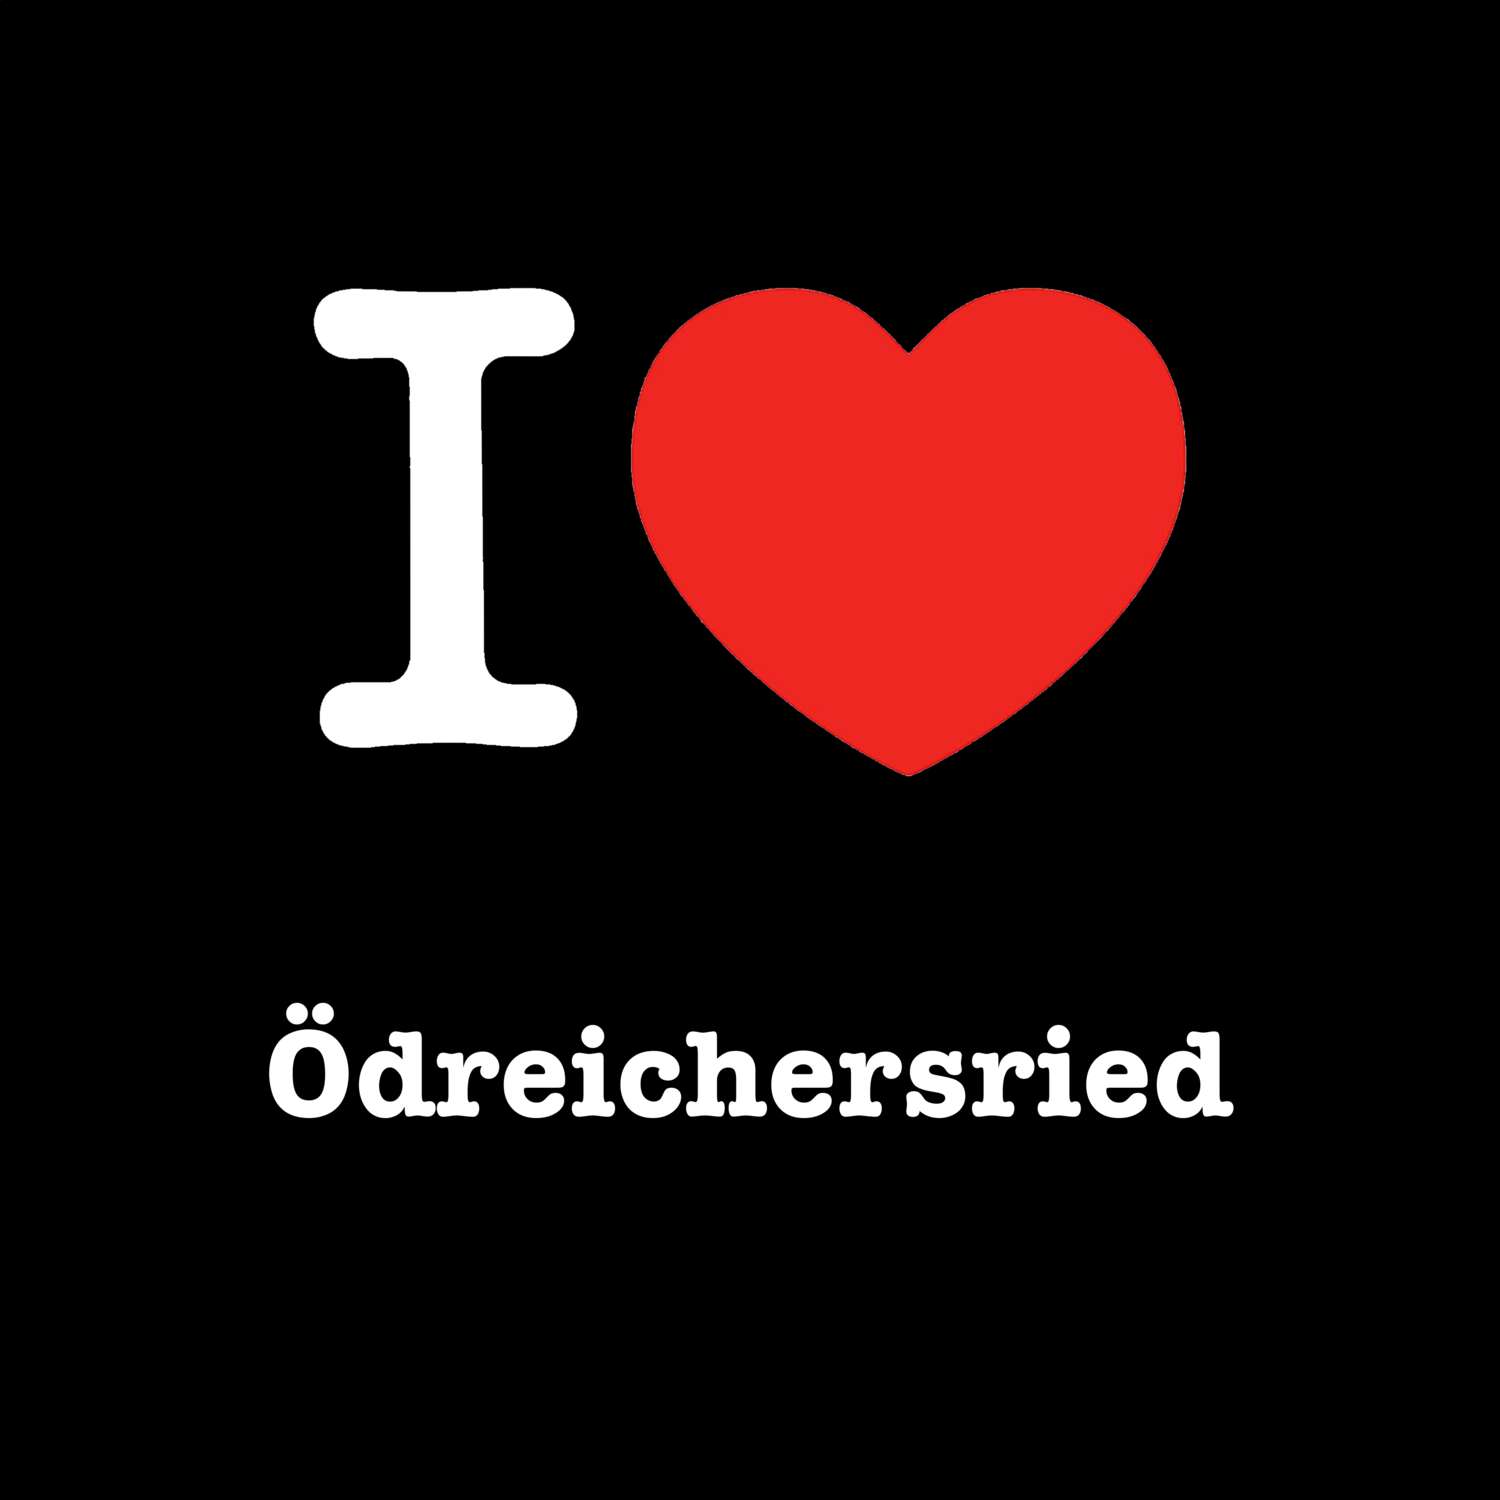 Ödreichersried T-Shirt »I love«